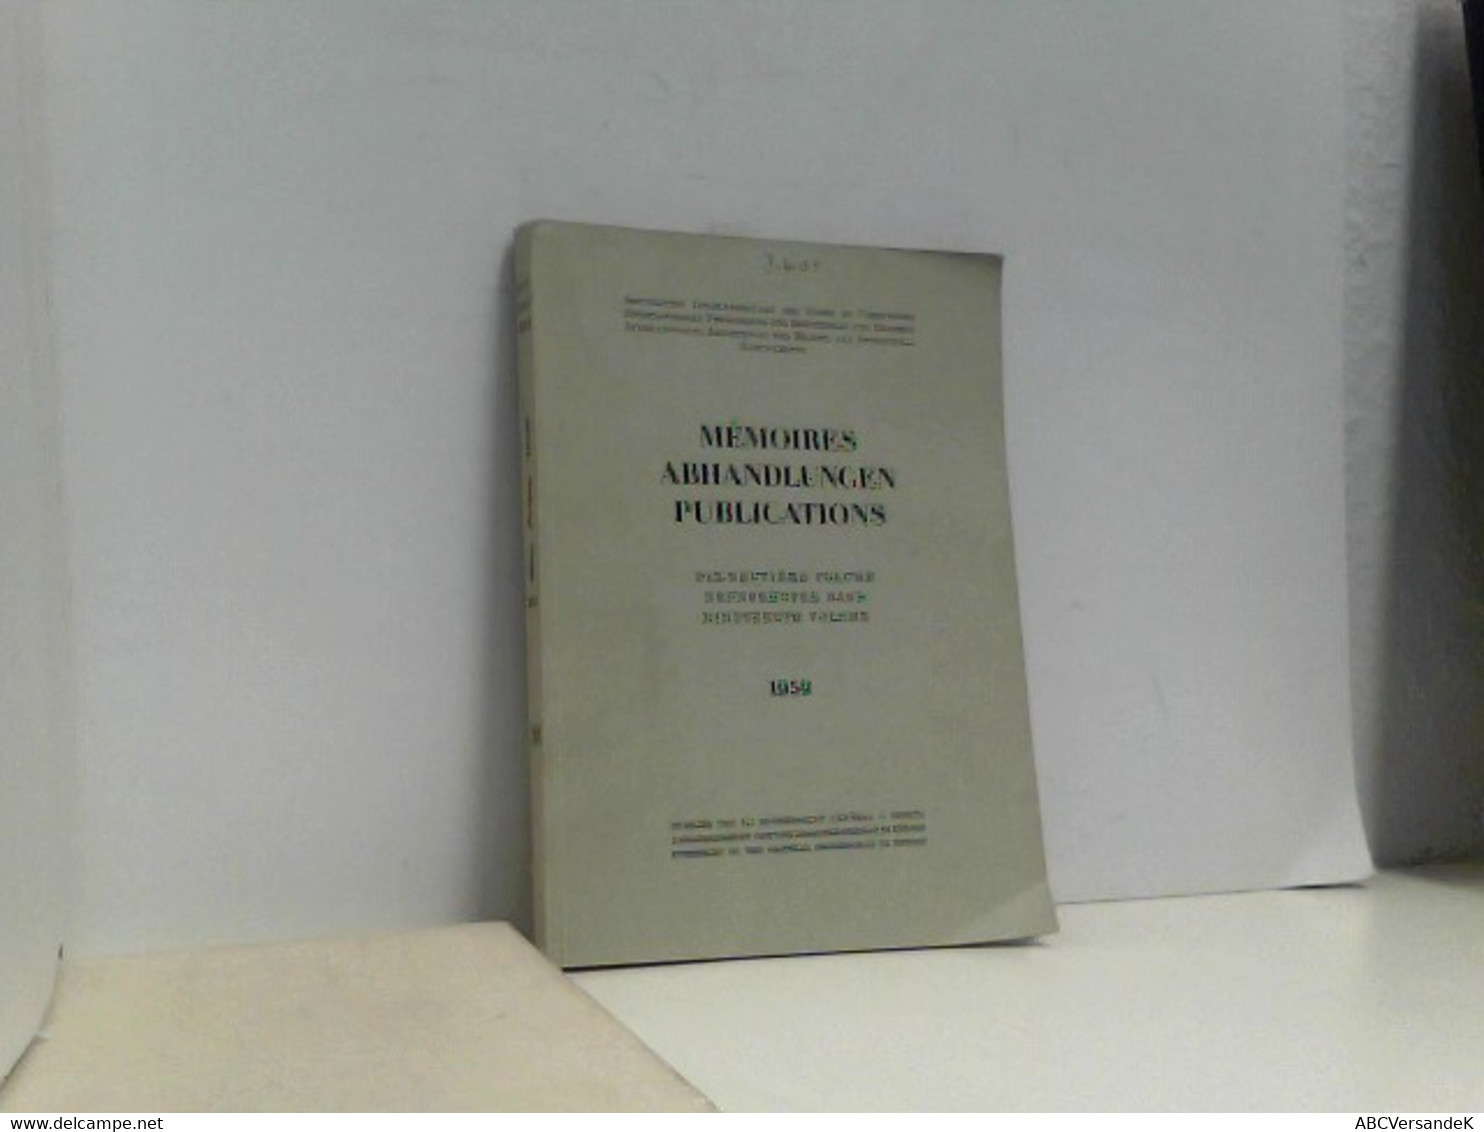 Memoires Abhandlungen Publications. Neunzehnter Band 1959 - Technical